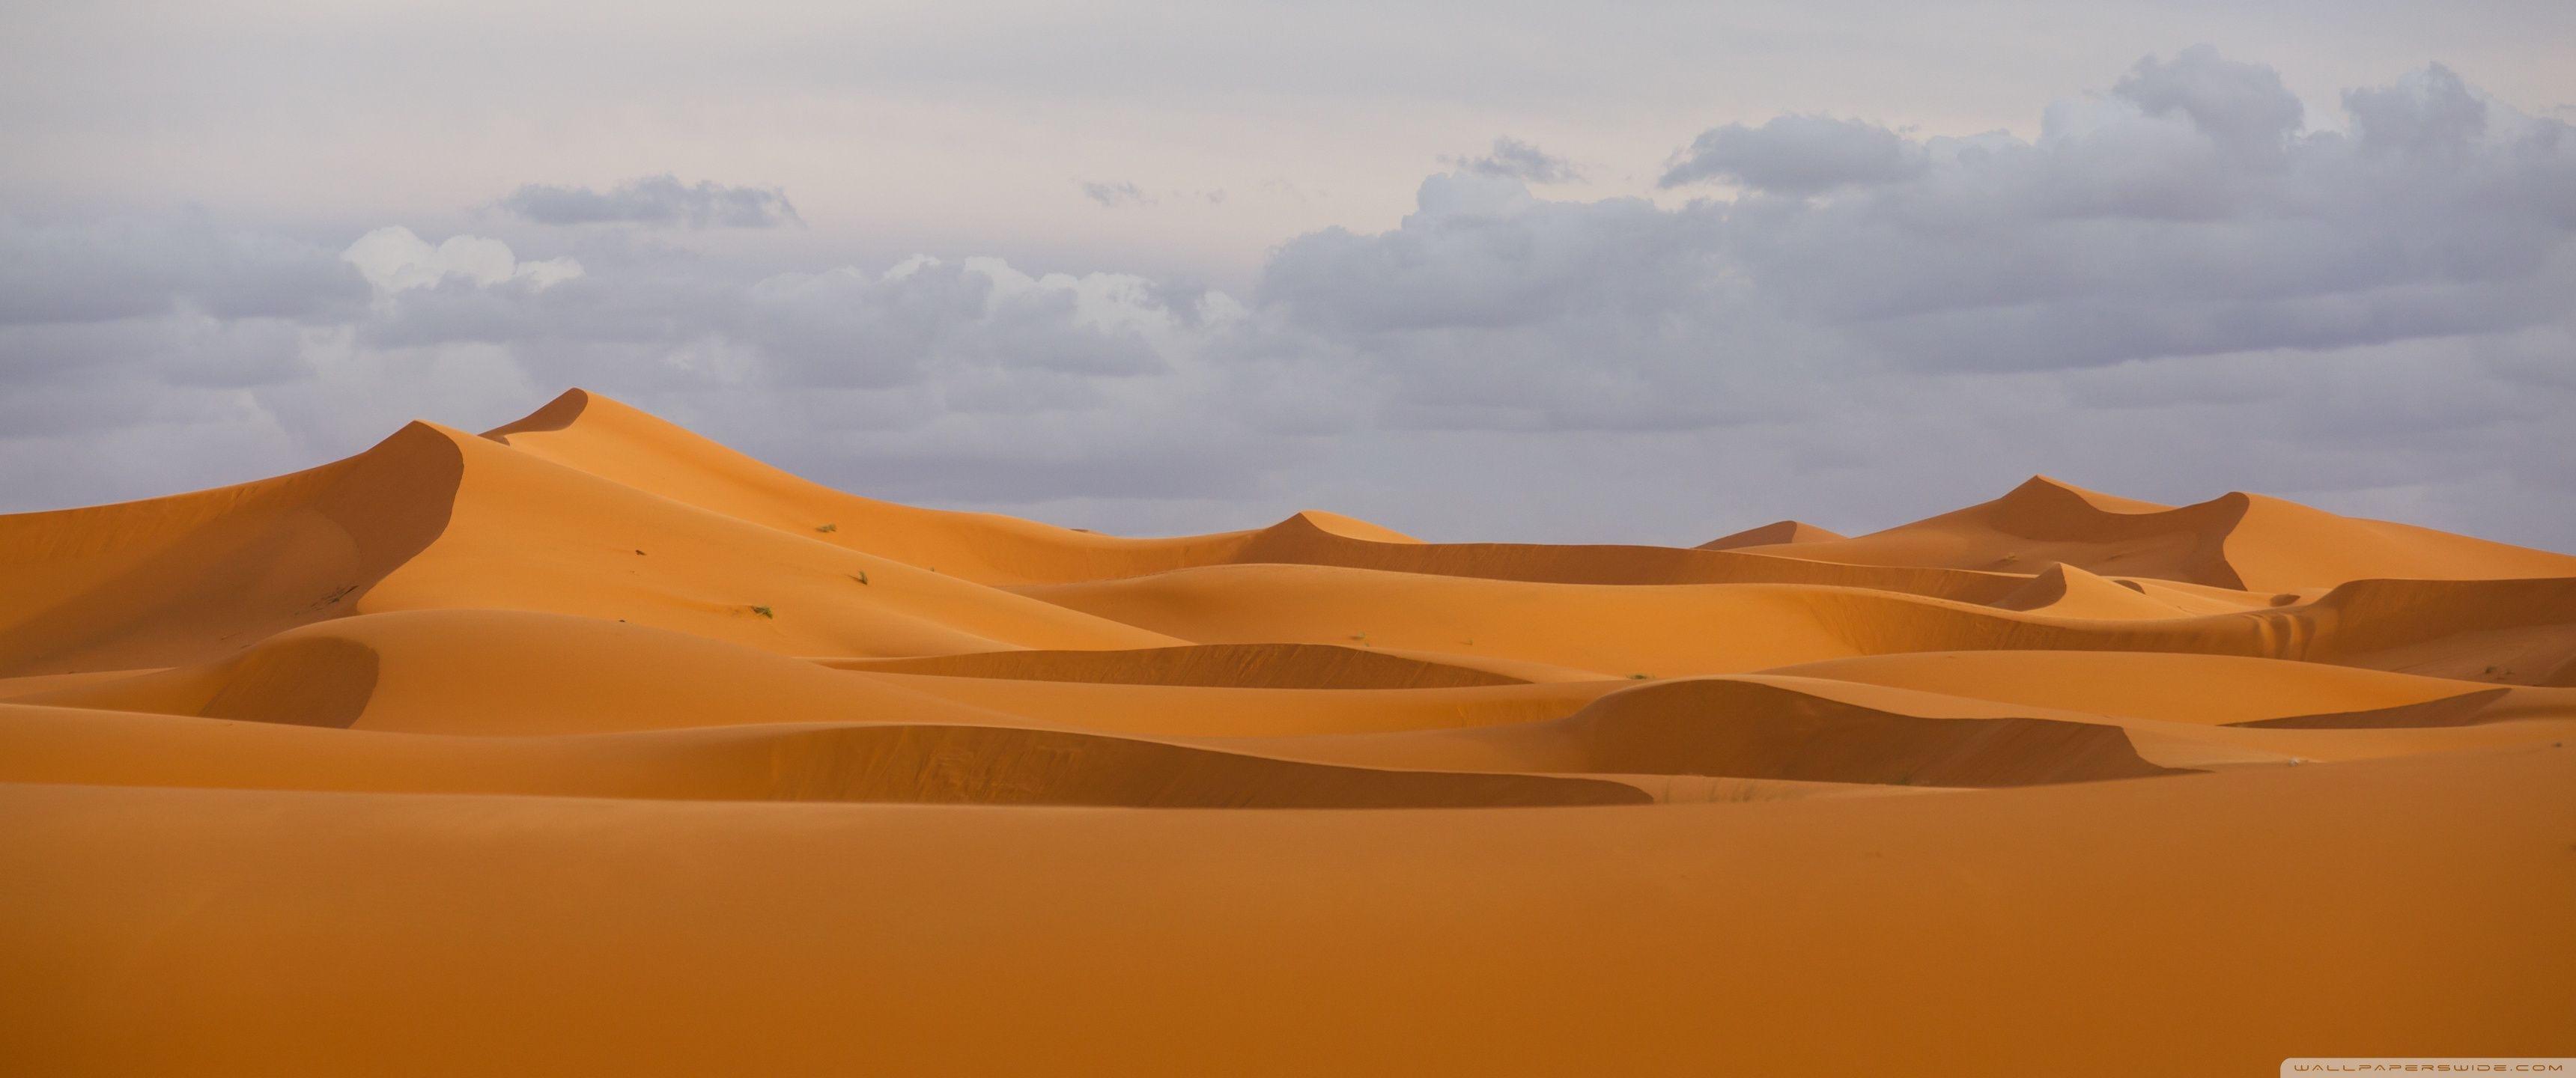 Desert Wallpaper Free Desert Background